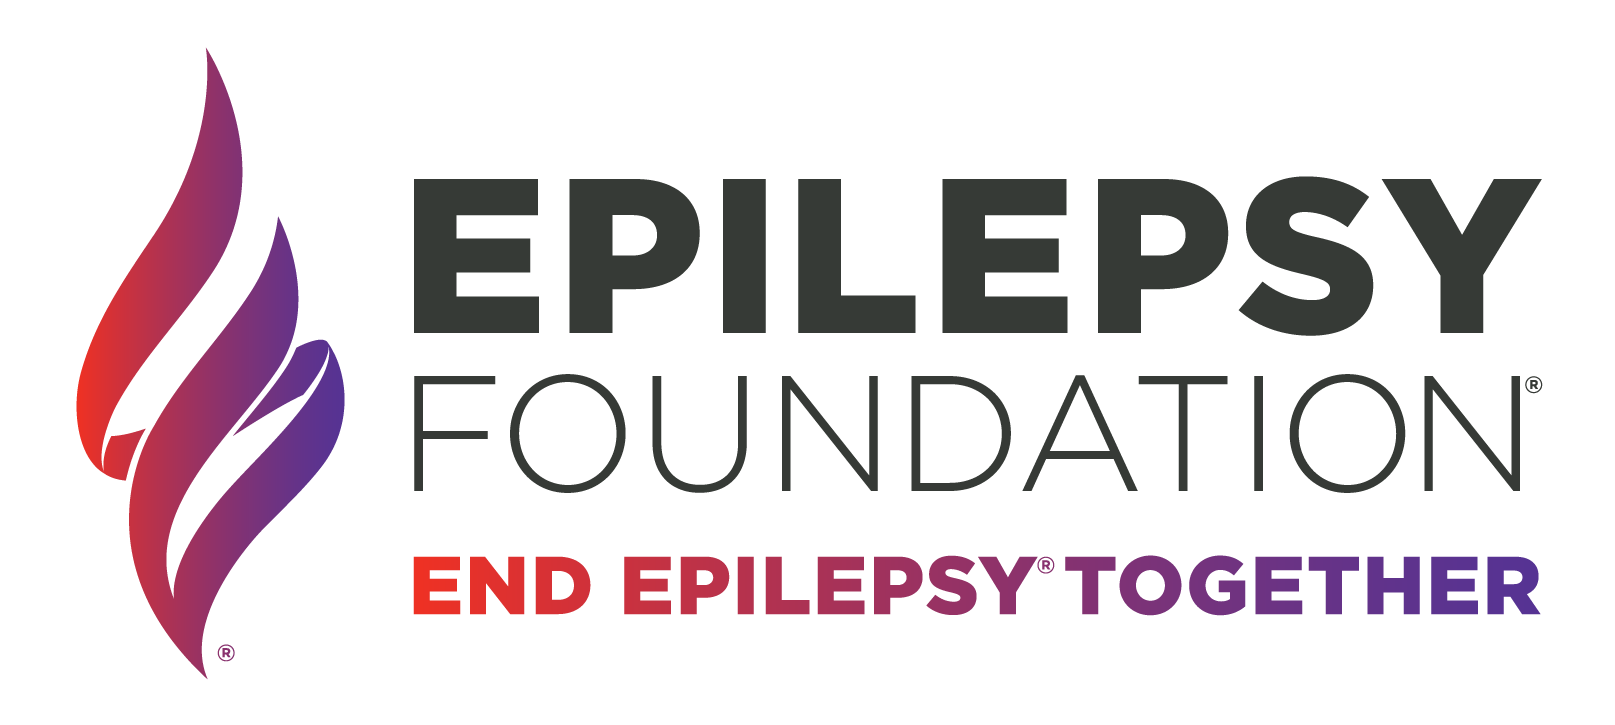 Epilepsy Foundation of America